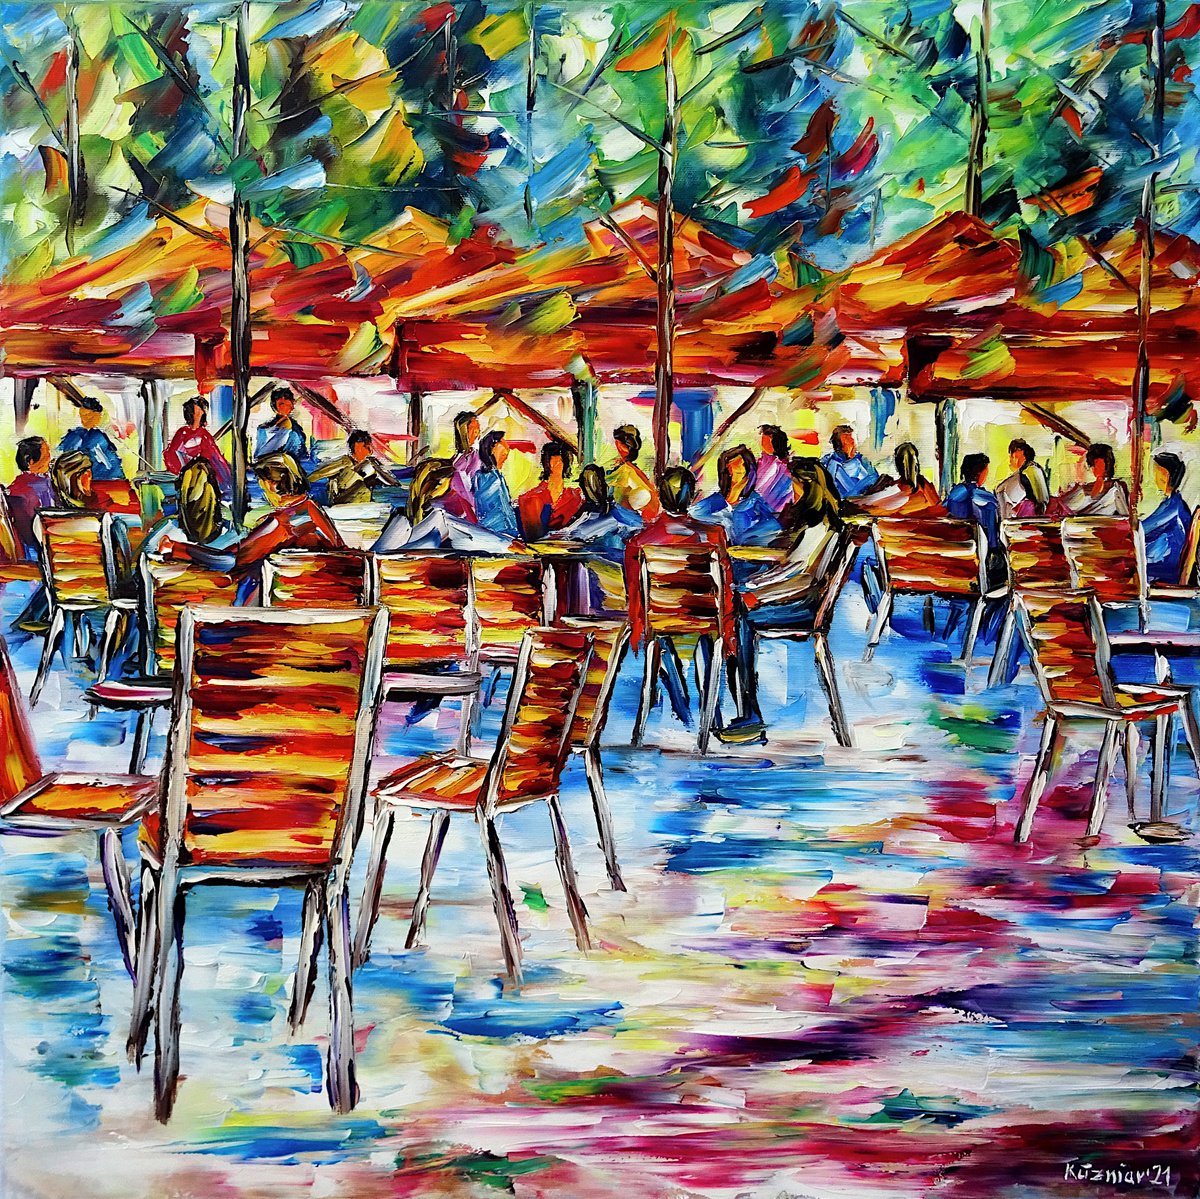 Cafe in the Jardin des Tuileries by Mirek Kuzniar